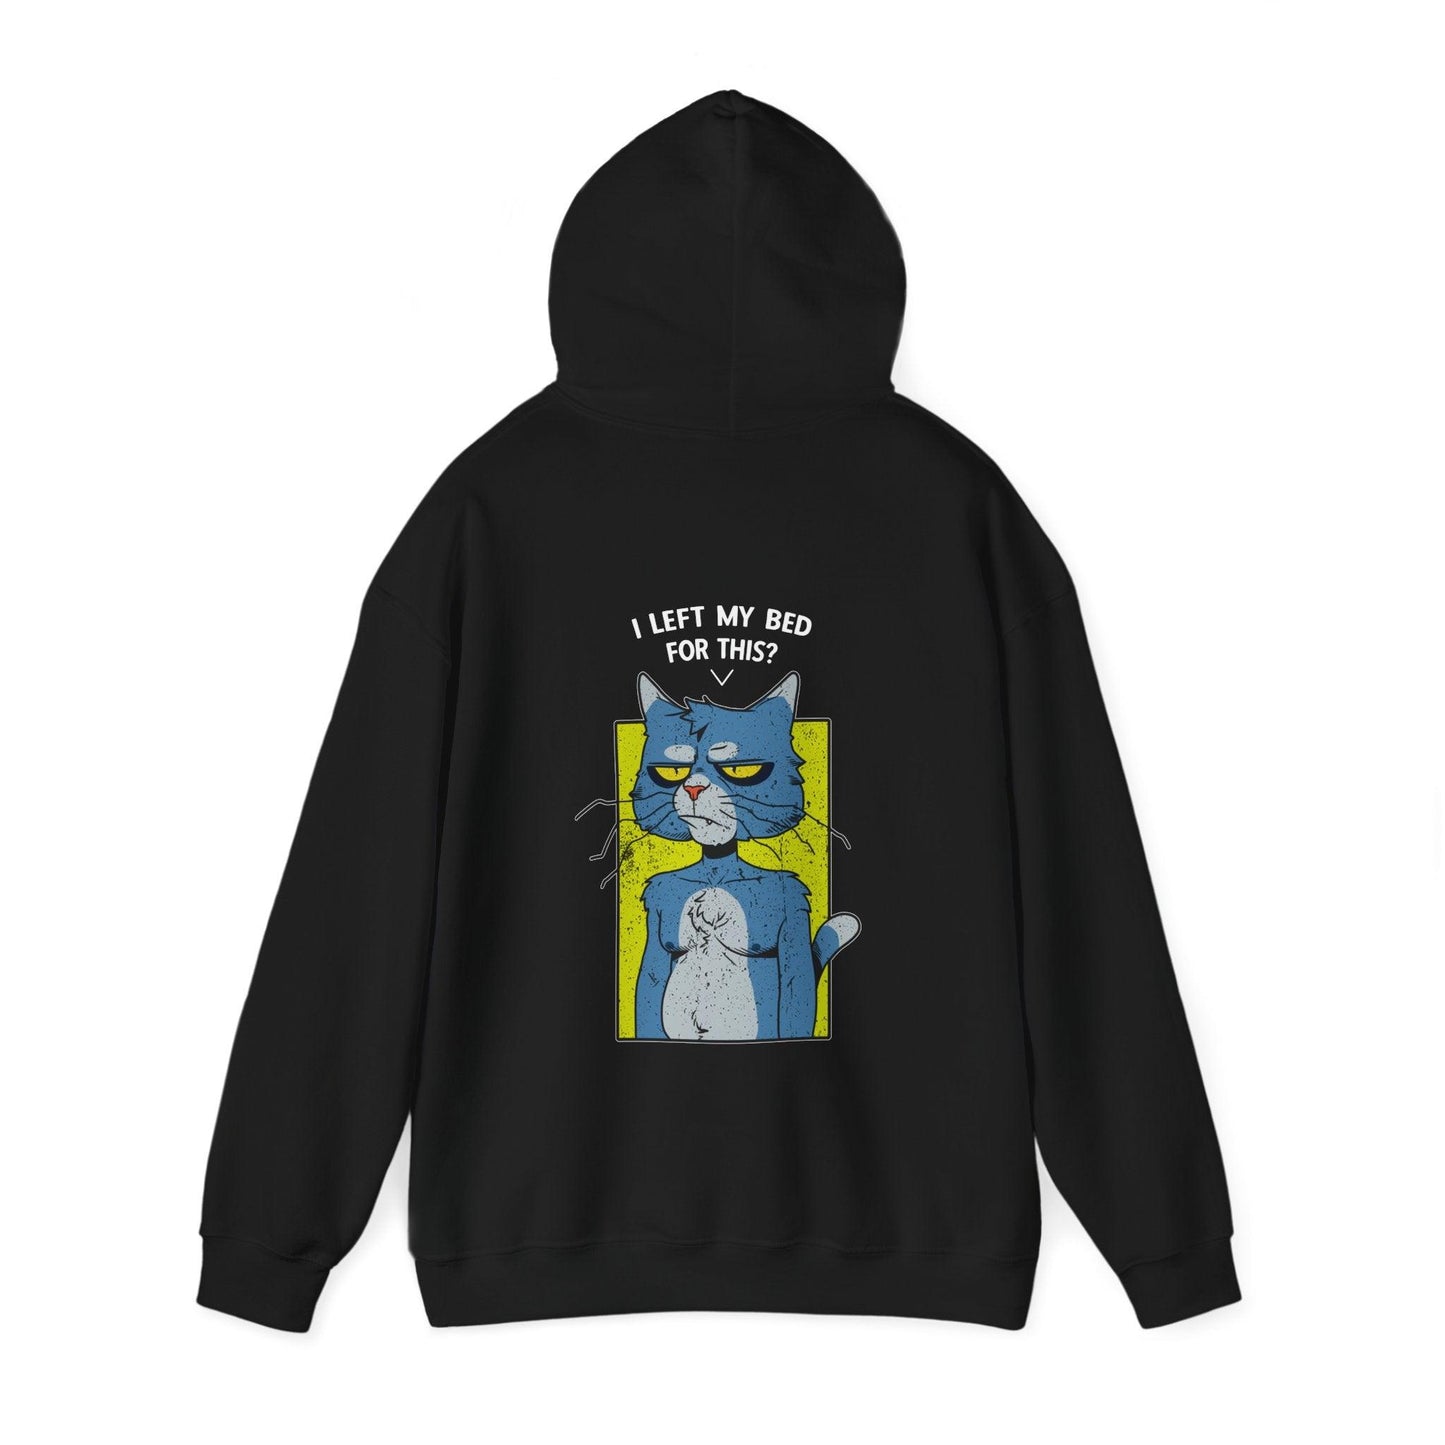 Introvert Cat - Unisex Heavy Blend Hooded Sweatshirt - Shaneinvasion